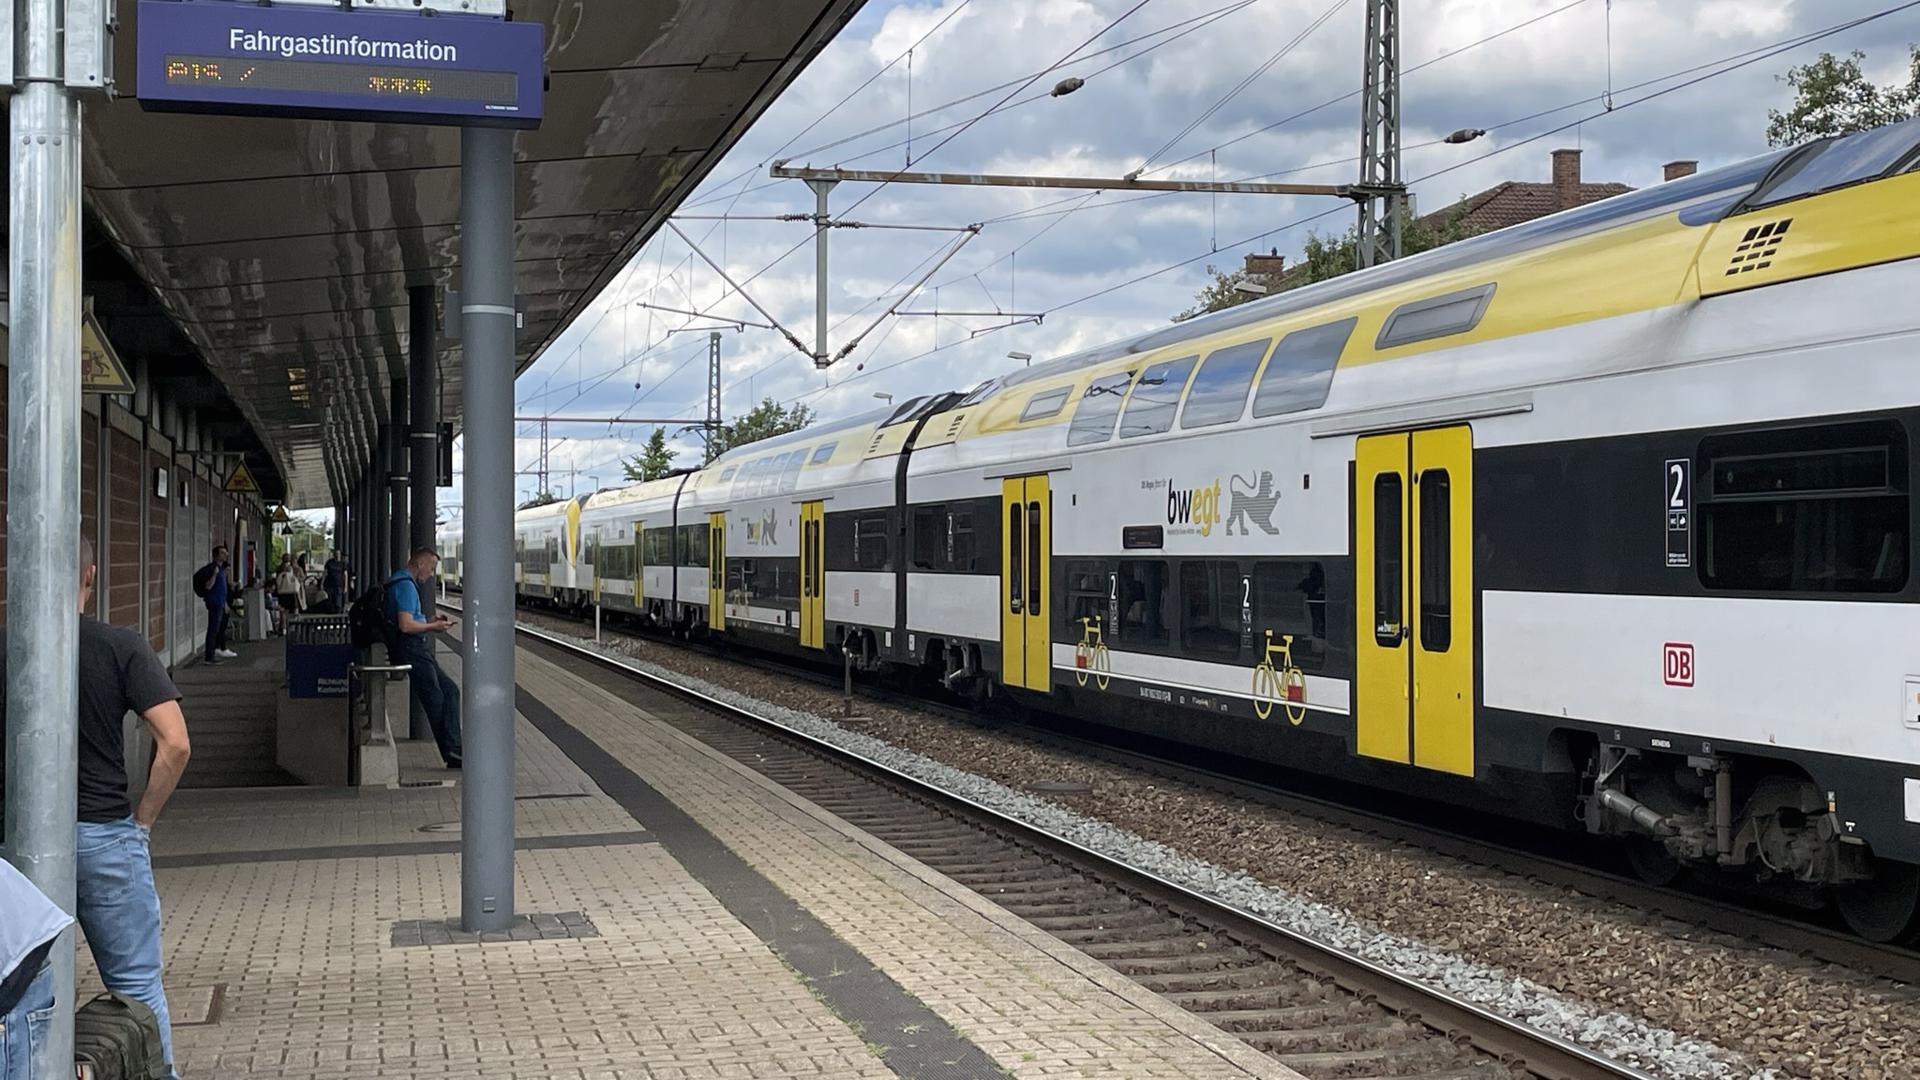 Abseits des Hauptstroms der Reisenden hängt am Gleis 2 in Bühl die Fahrgastinformation. Einen Bahnnutzer aus Bühl ärgert das.